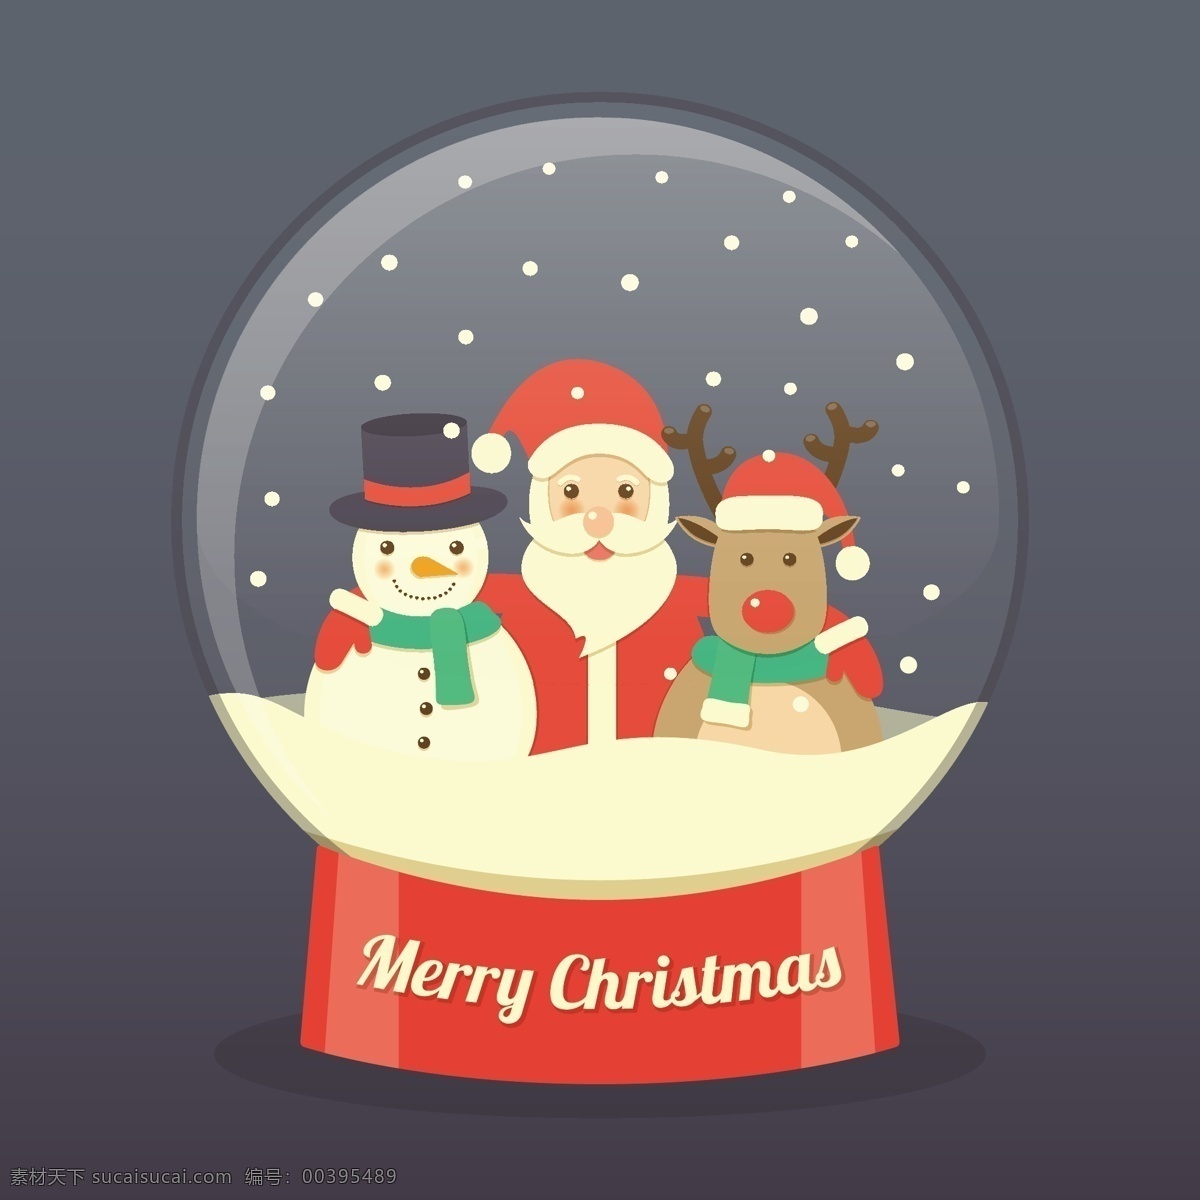 圣诞老人 只 驯鹿 一个 玻璃球 里 雪人 圣诞树 星 卡 家人 圣诞快乐 冬天 圣诞卡 圣诞 玻璃 雪花 装饰装修 球